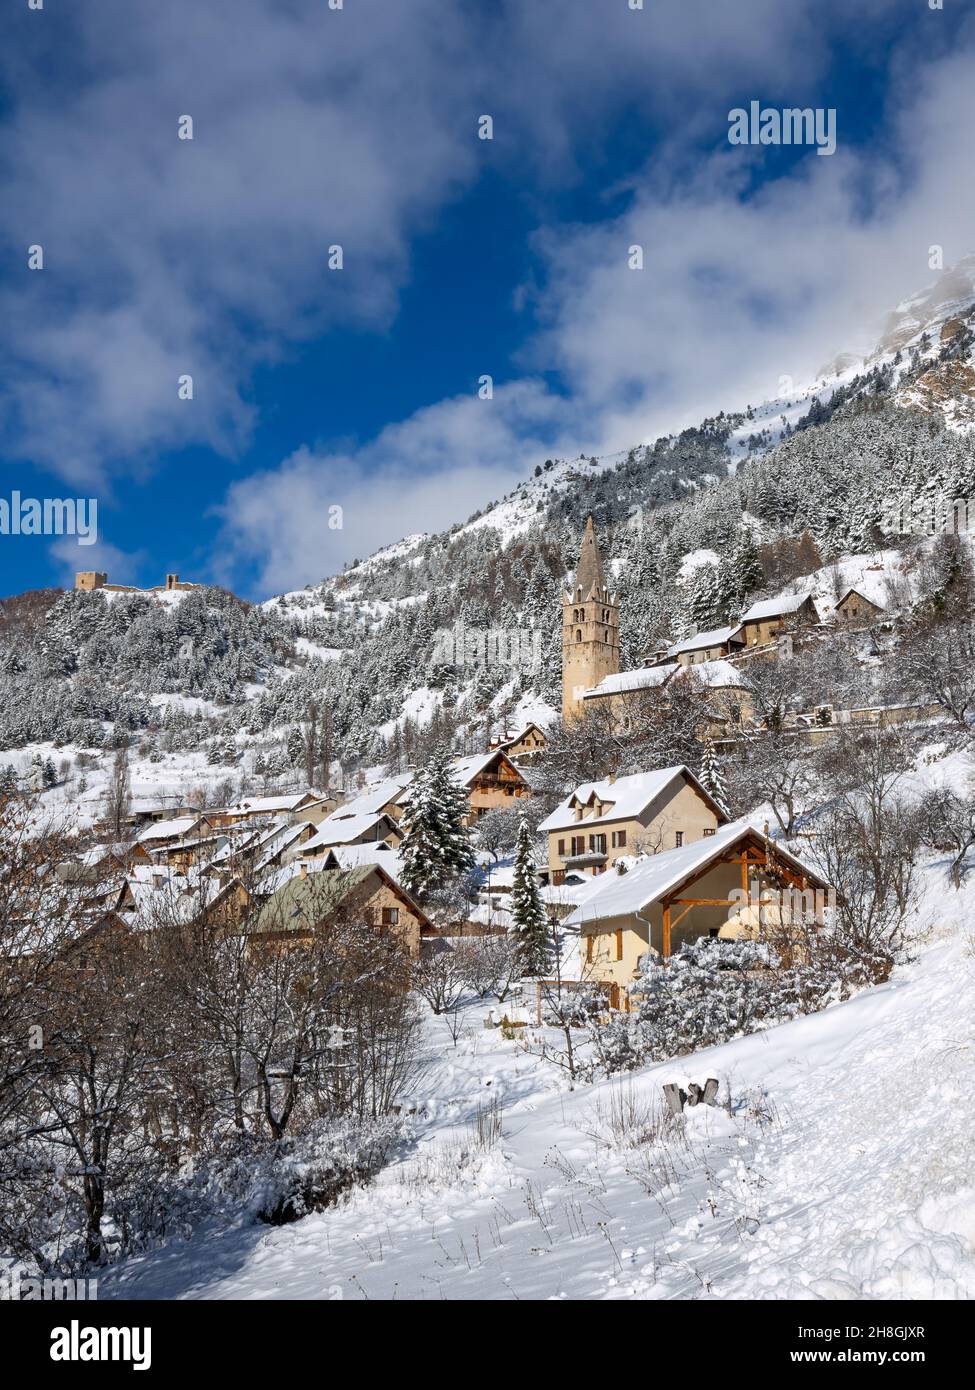 Das Dorf Reallon im Nationalpark Ecrins im Winter. Skigebiet in den Hautes-Alpes (Französische Alpen). Frankreich Stockfoto